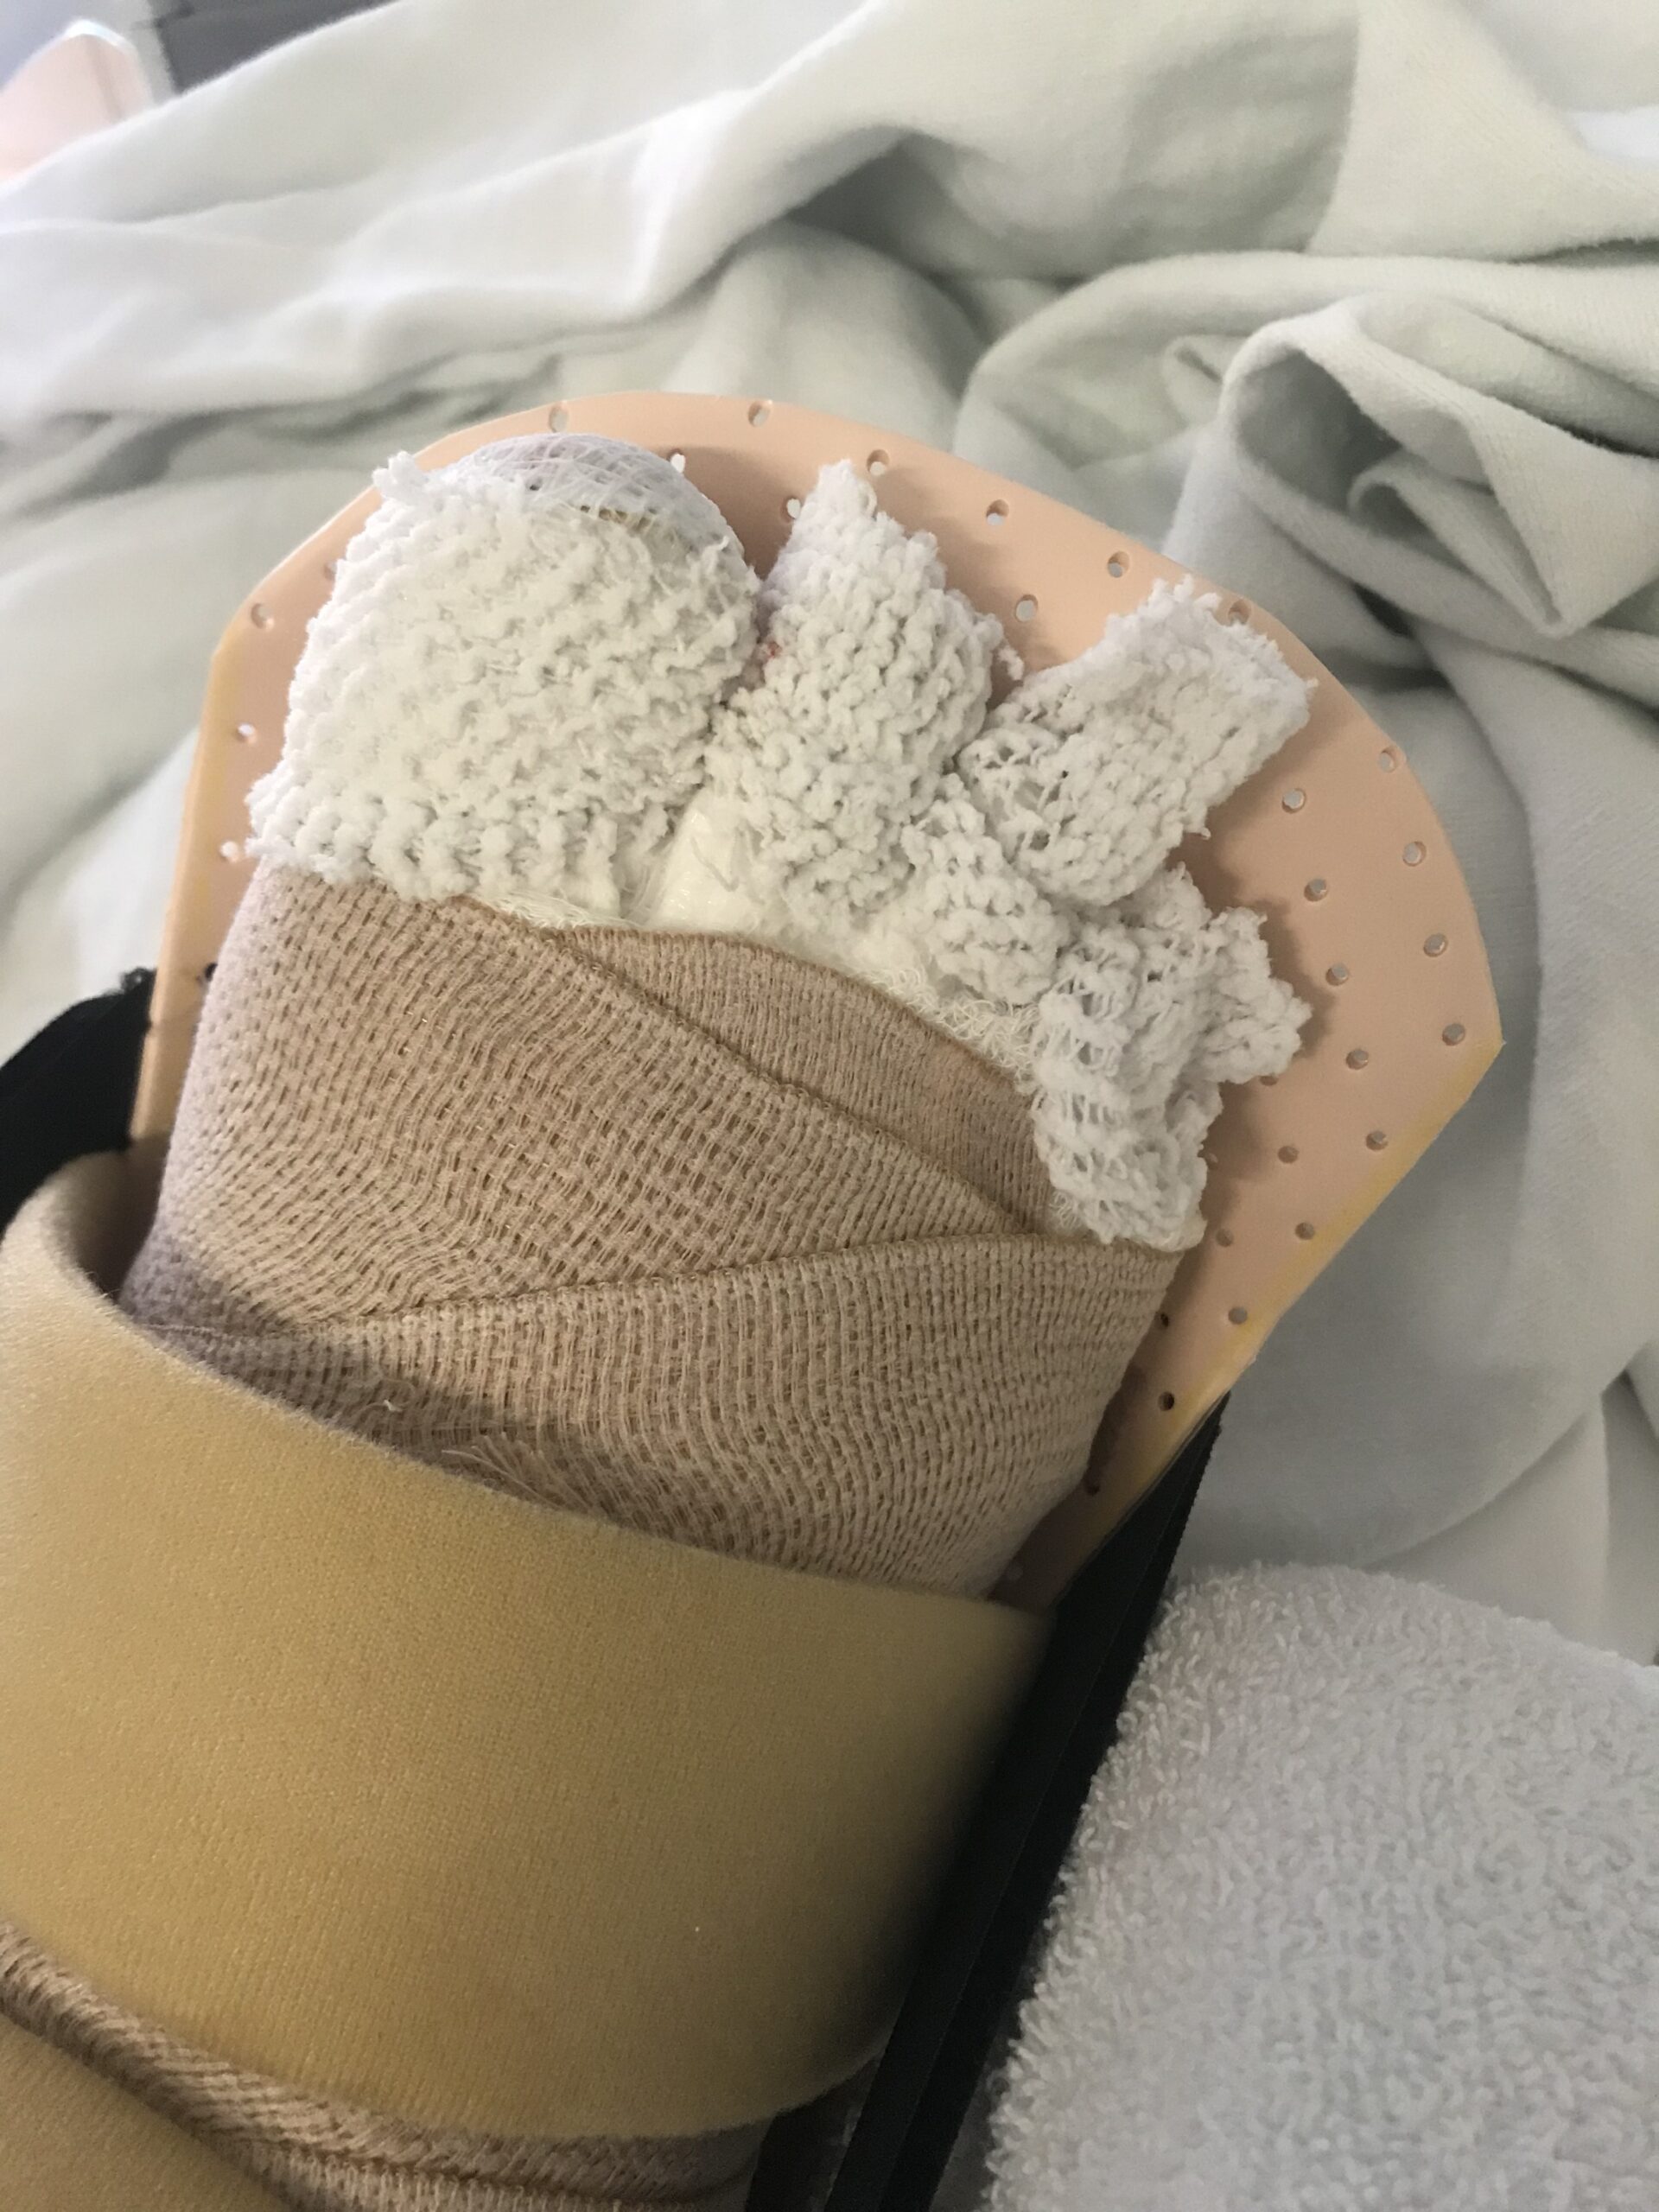 a bandaged foot